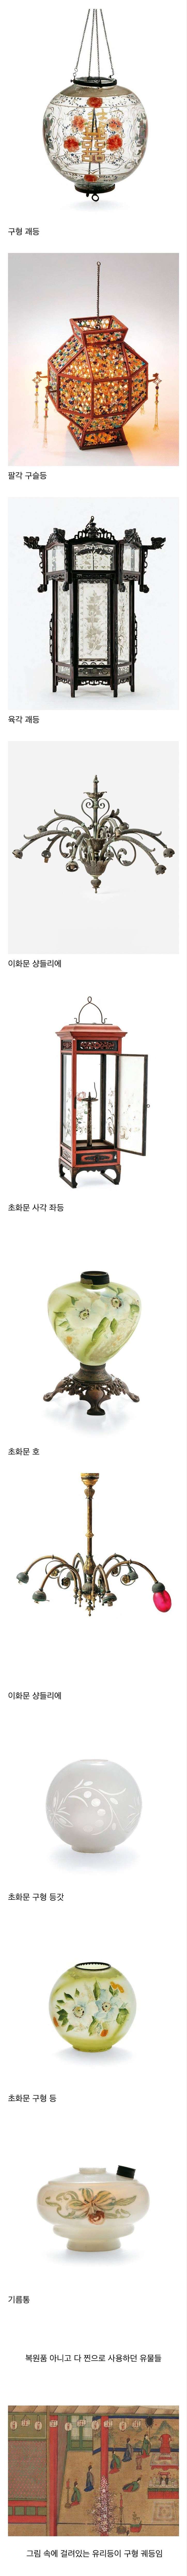 nokbeon.net-조선 왕실에서 사용하던 조명기구. jpg-1번 이미지